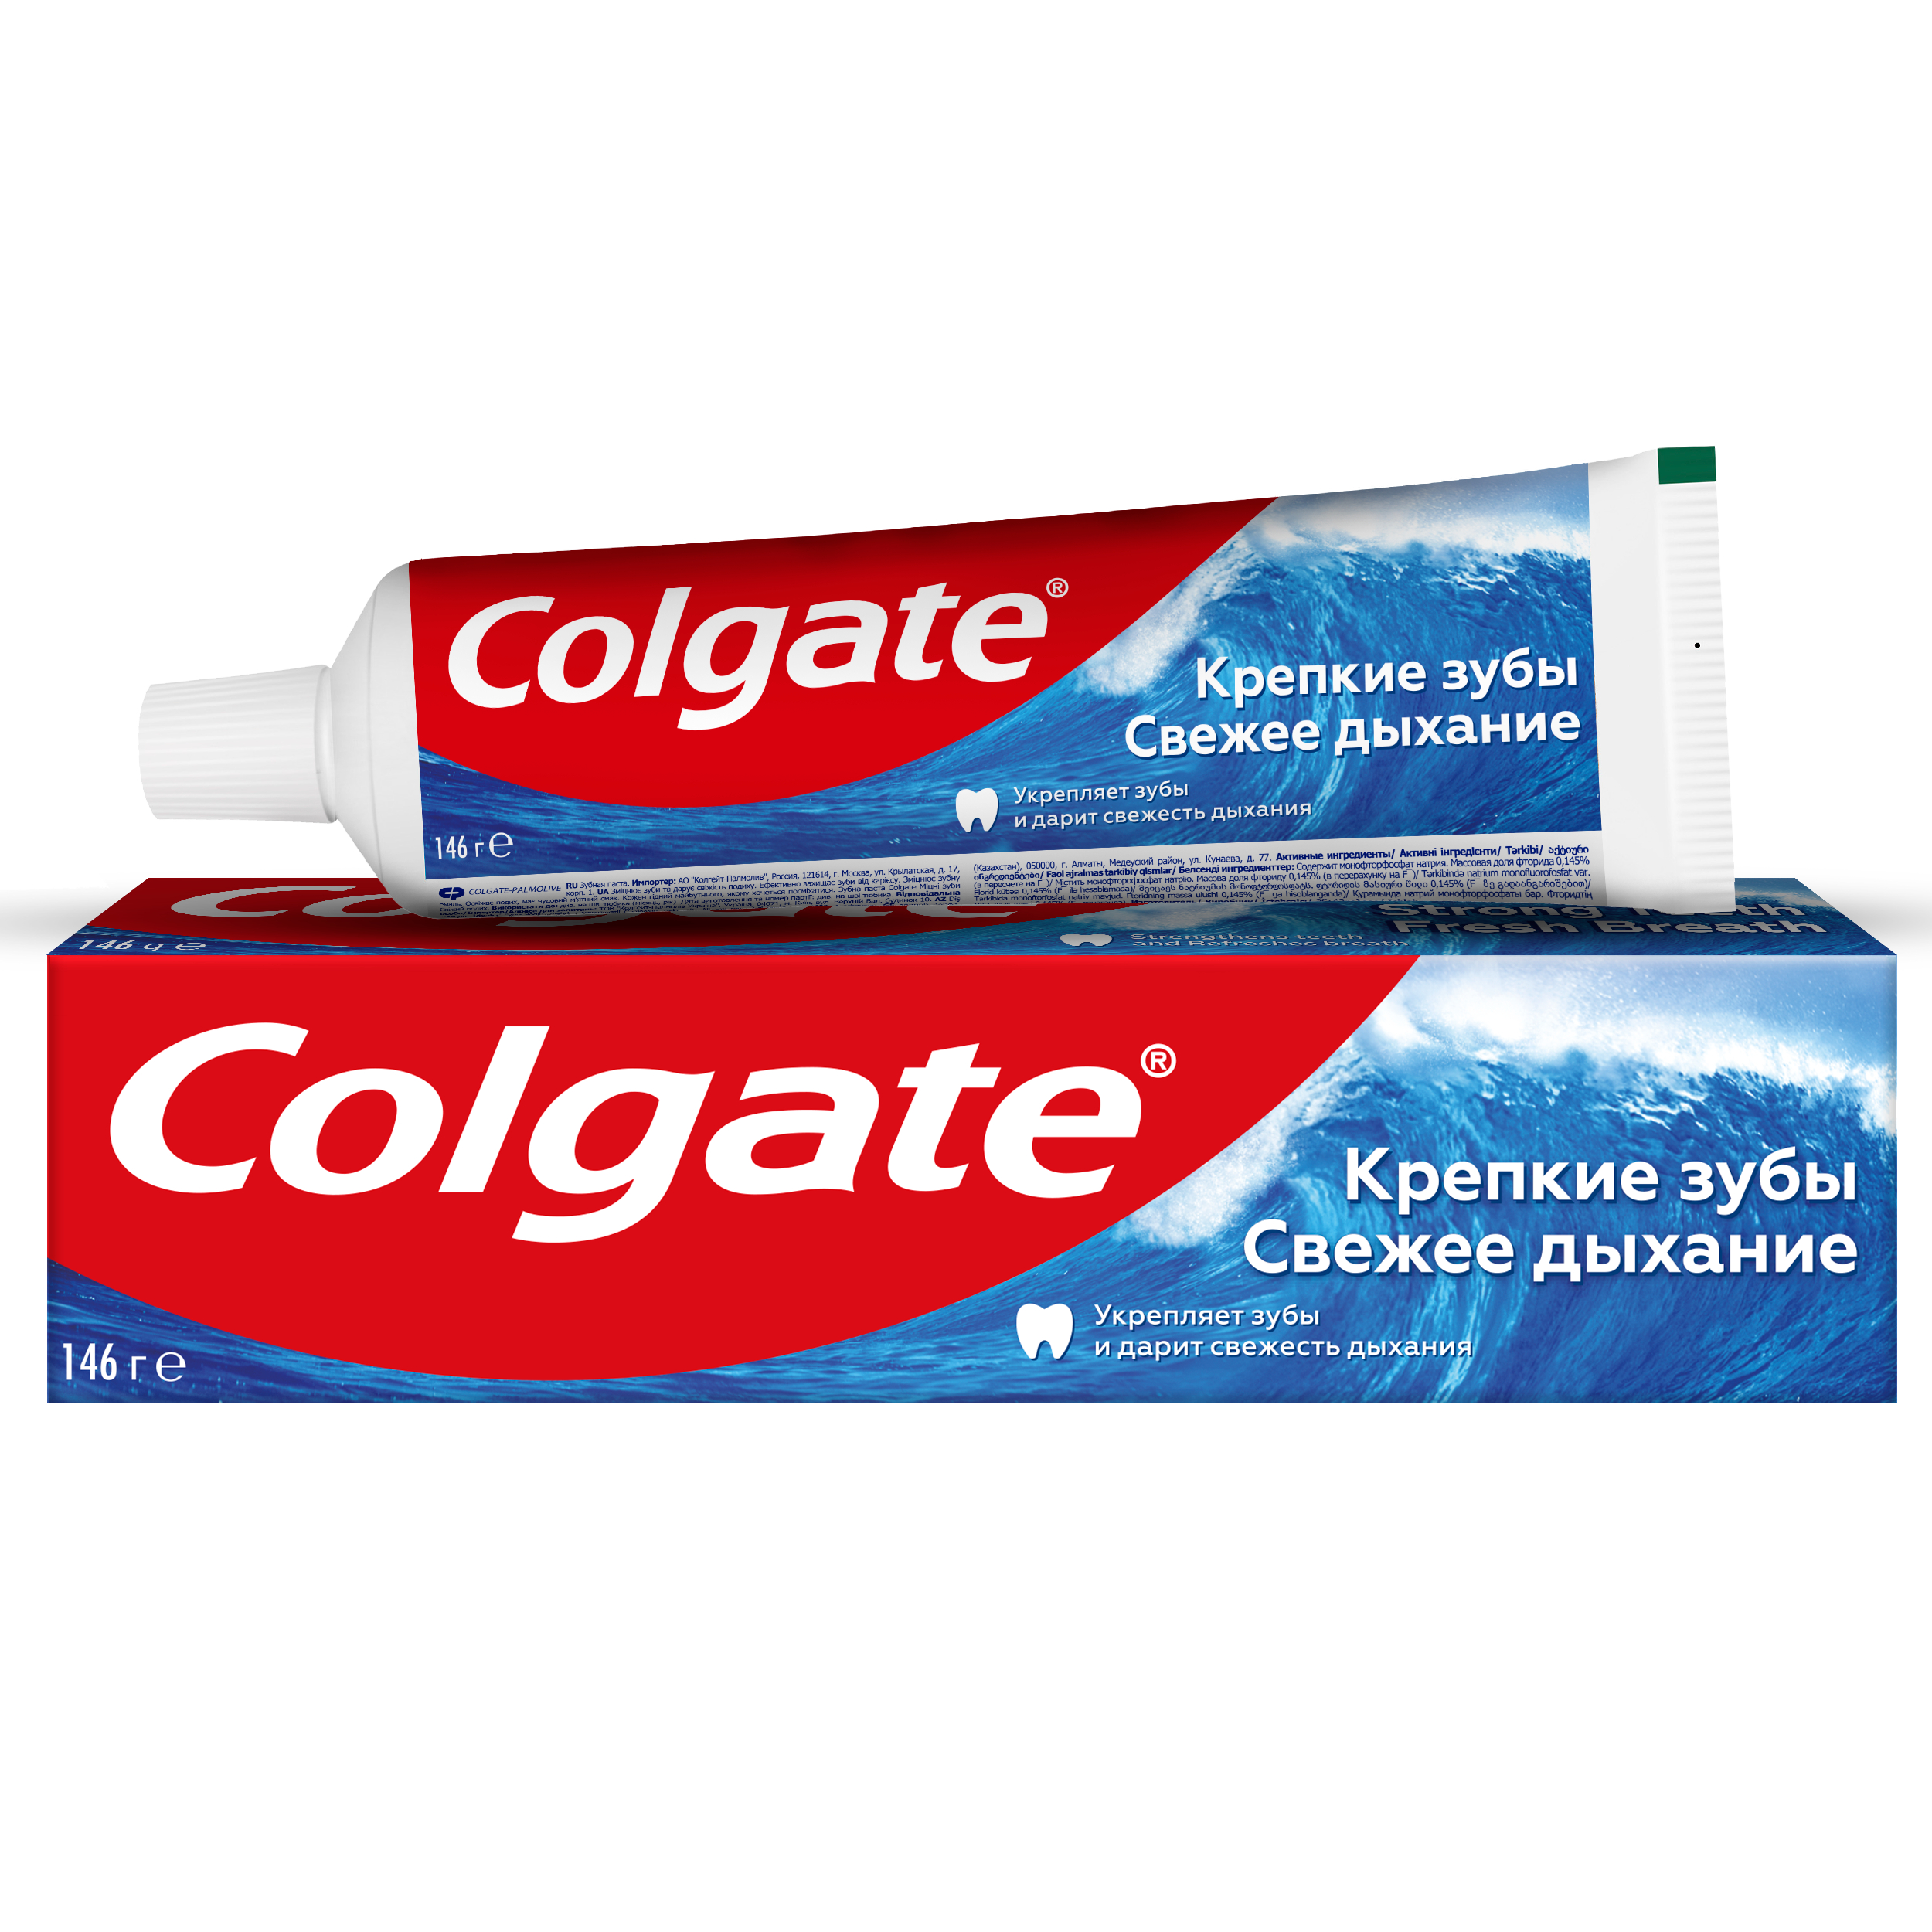 Зубная паста Colgate крепкие зубы свежее дыхание для укрепления эмали, 100 мл з паста колгейт крепкие зубы свежее дыхание 100мл